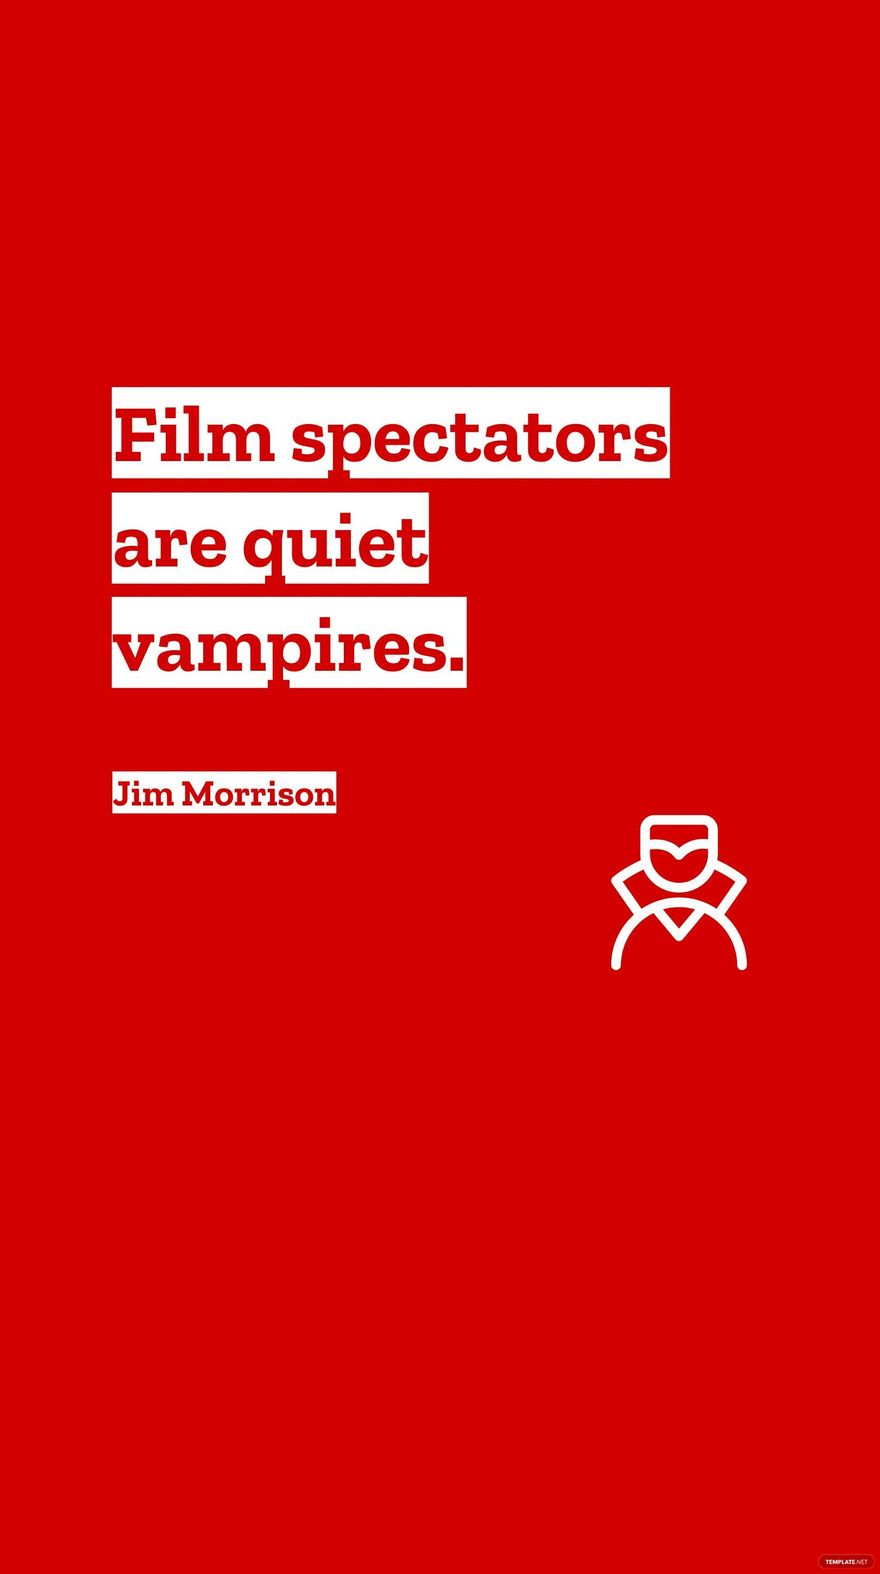 Jim Morrison - Film spectators are quiet vampires.